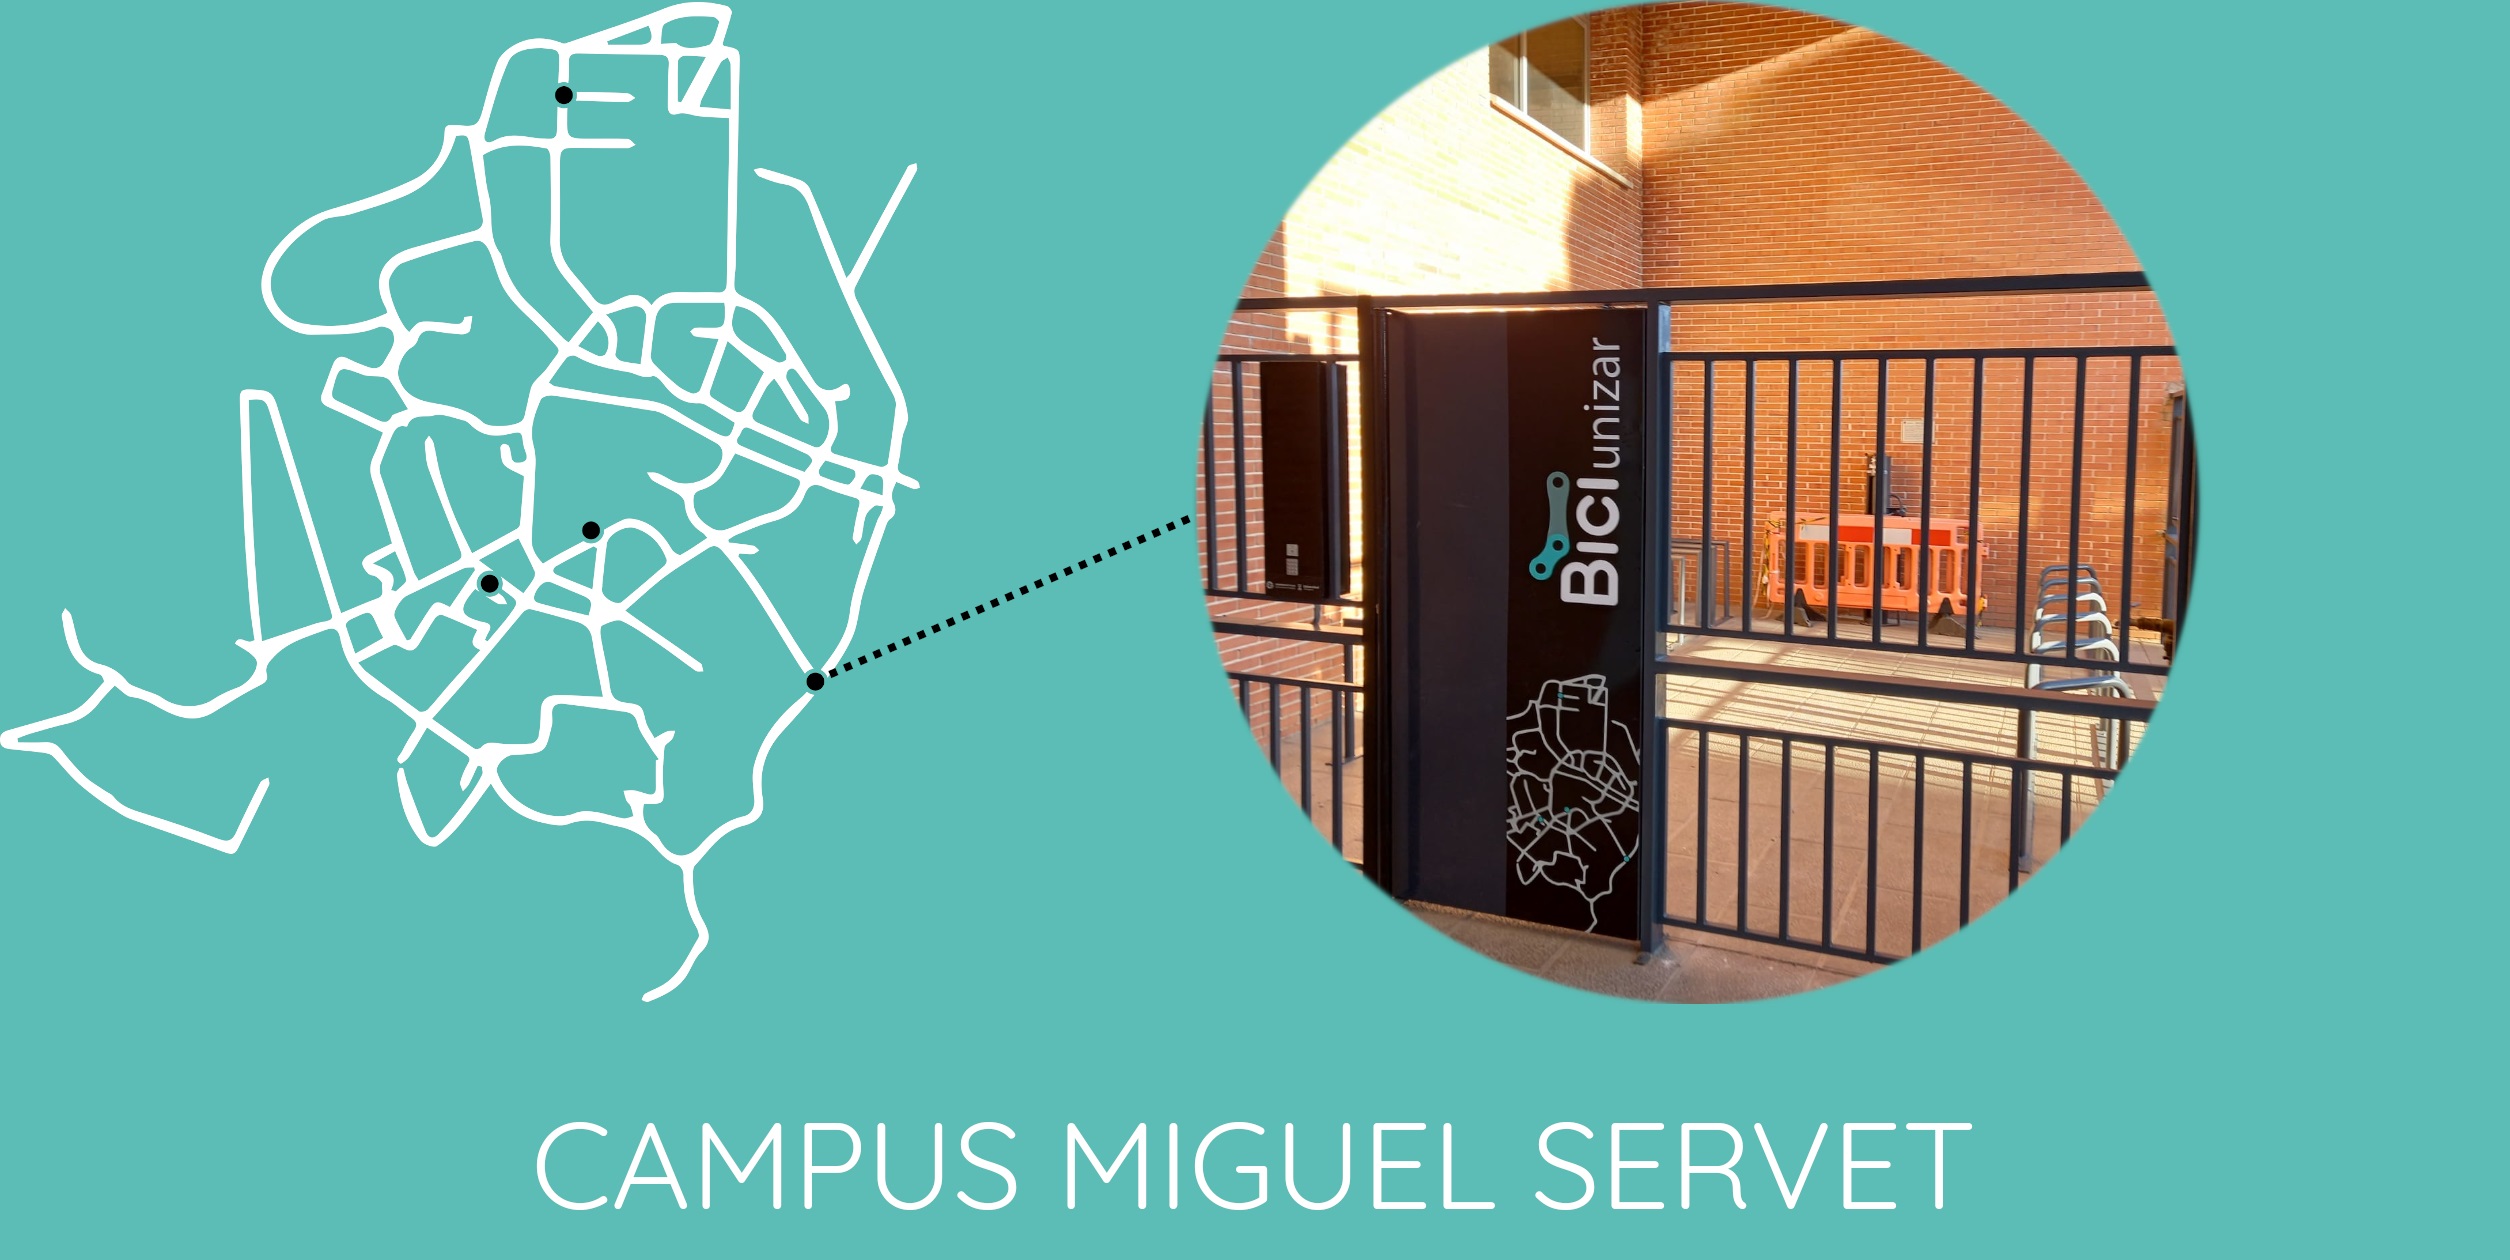 Campus Miguel Servet